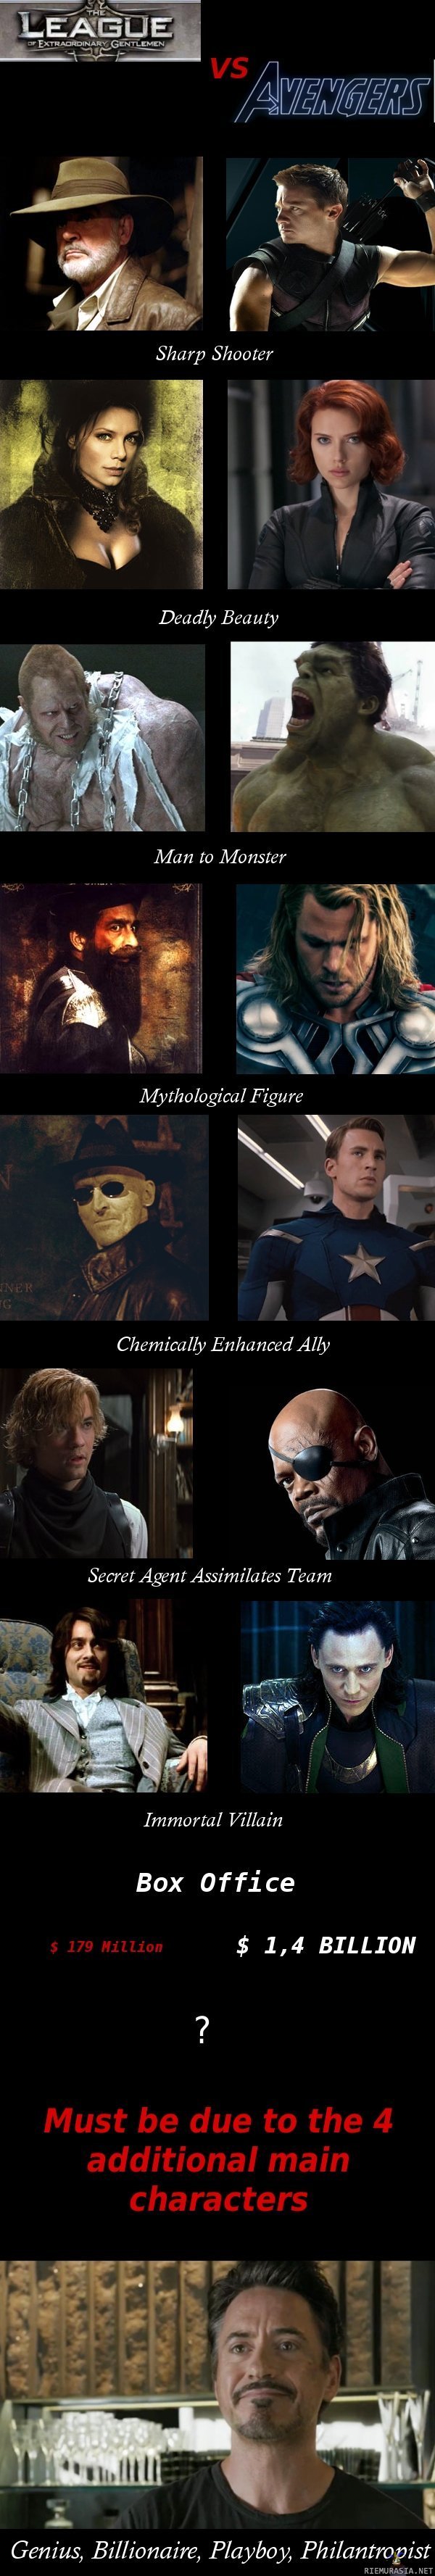 League of extraordinary gentlemen vs. avengers